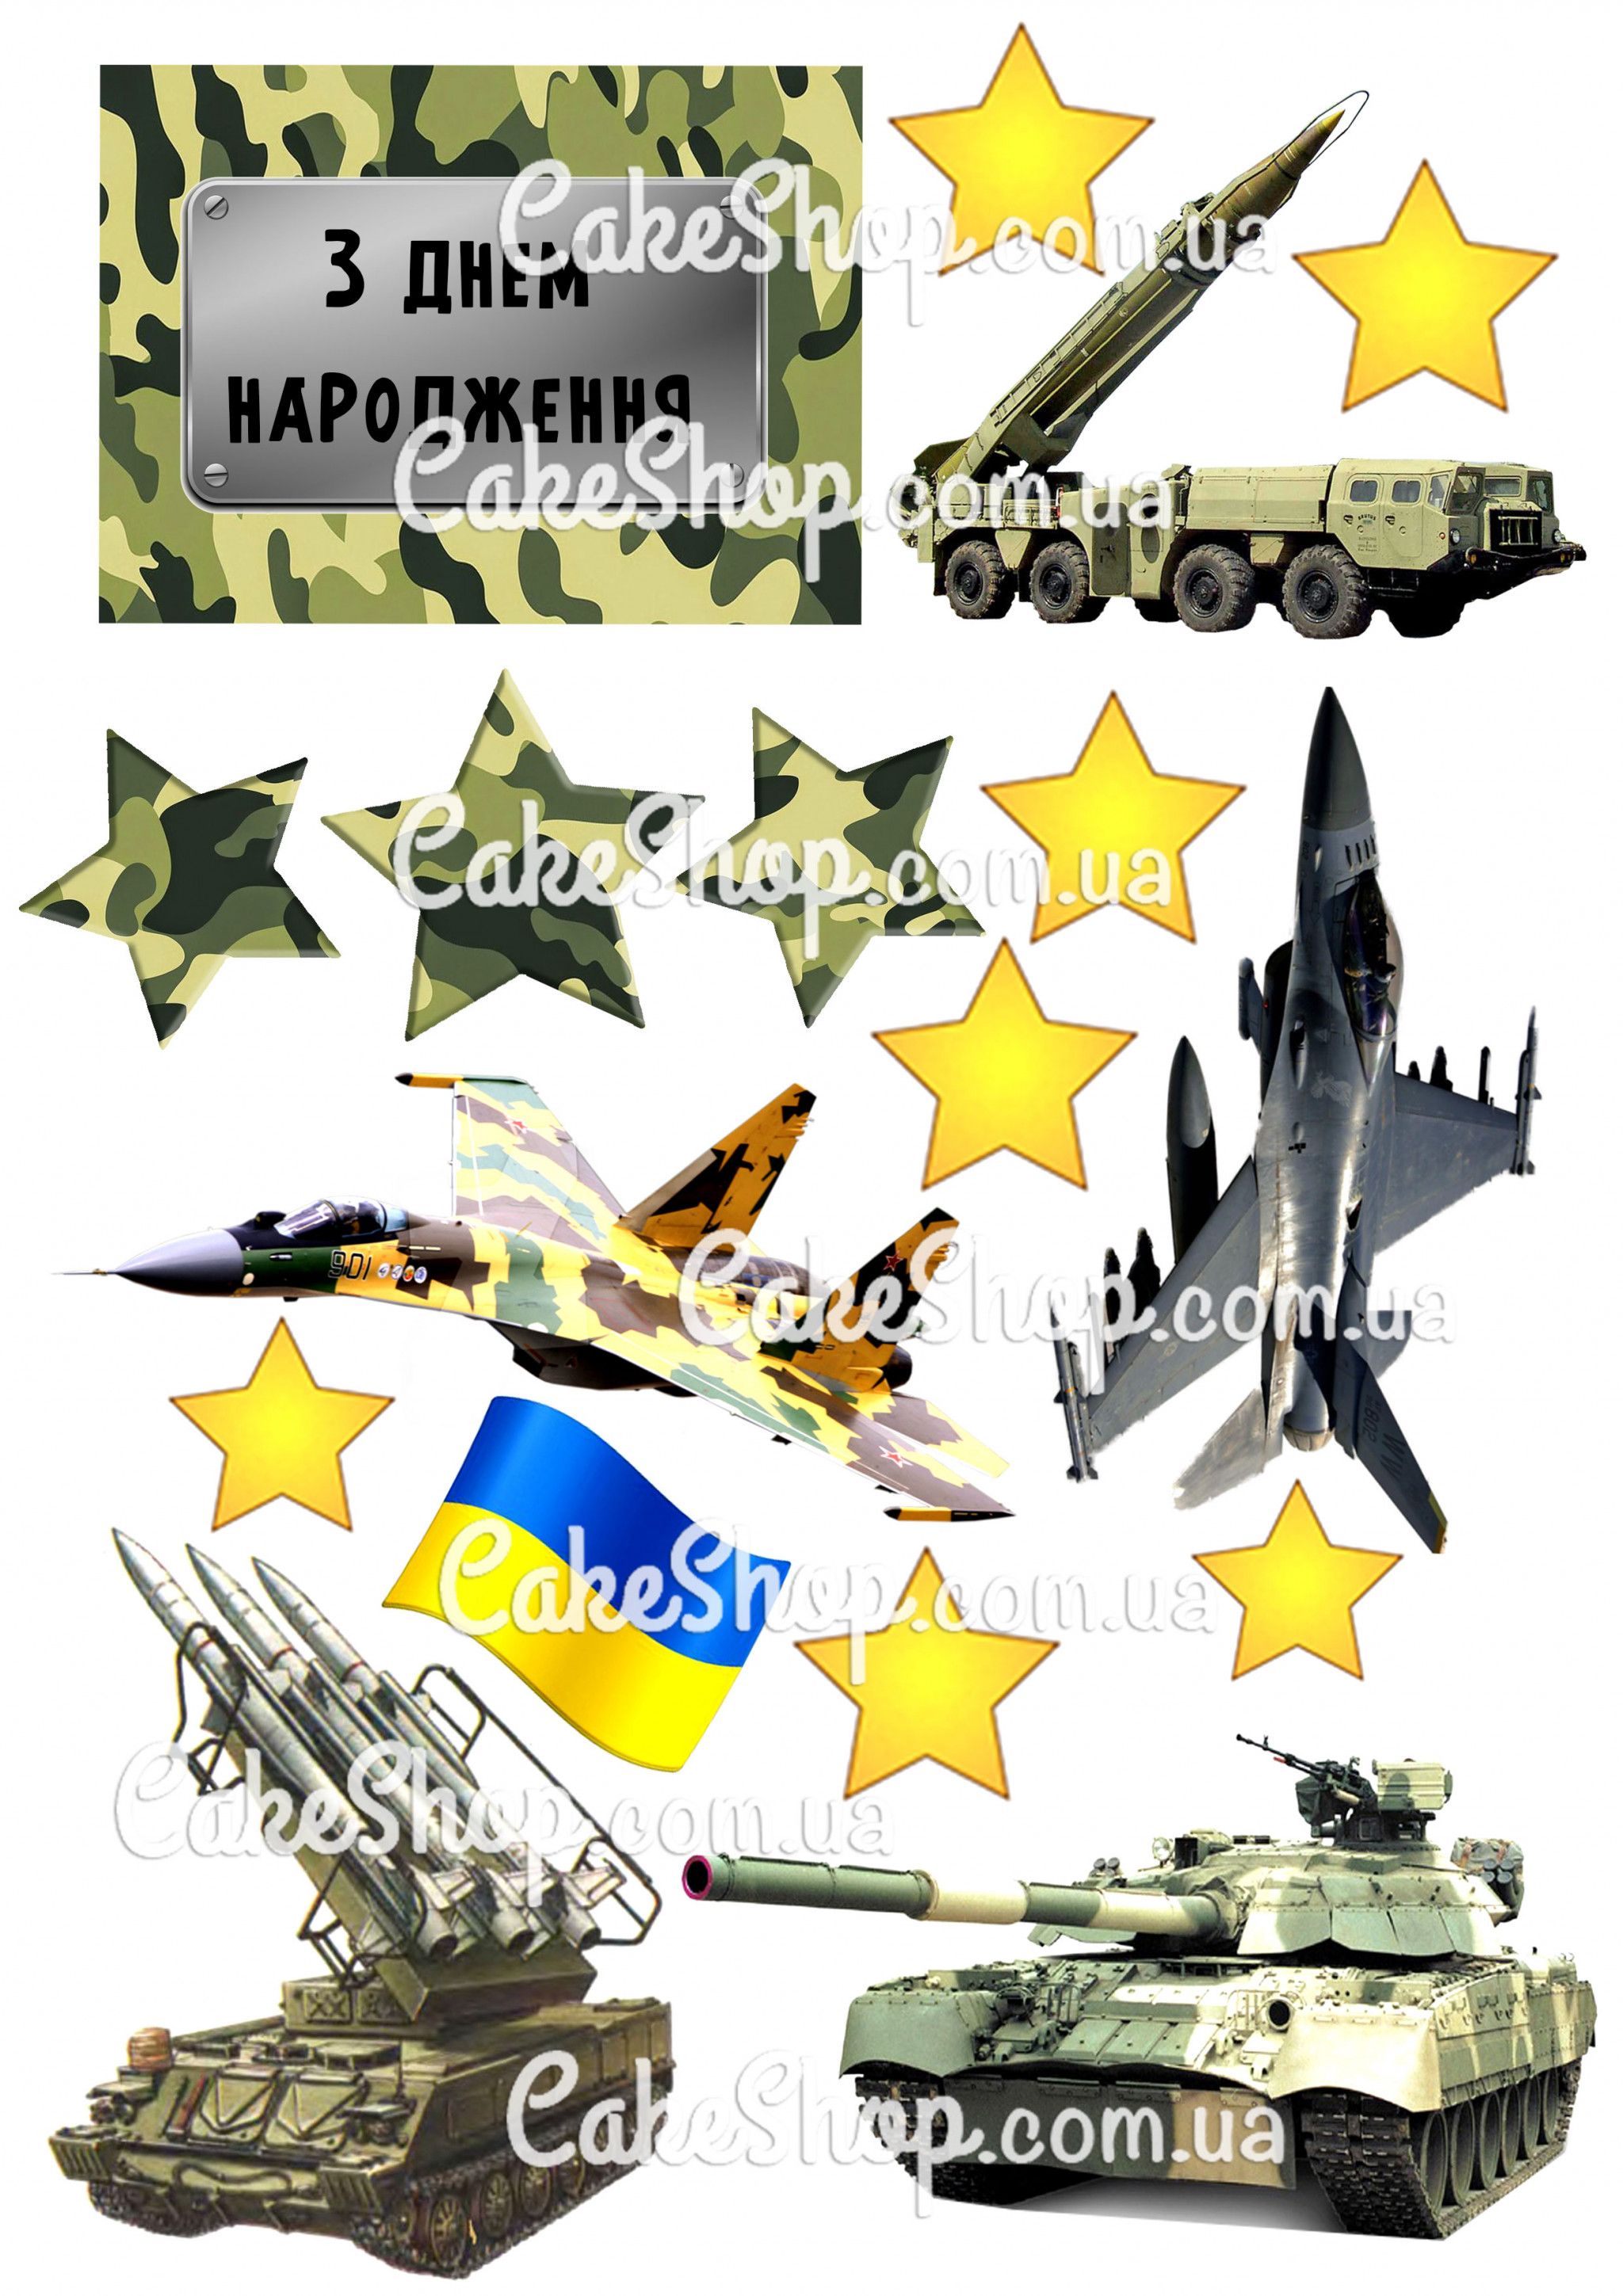 ⋗ Вафельная картинка Защитник Украины 2 купить в Украине ➛ CakeShop.com.ua, фото